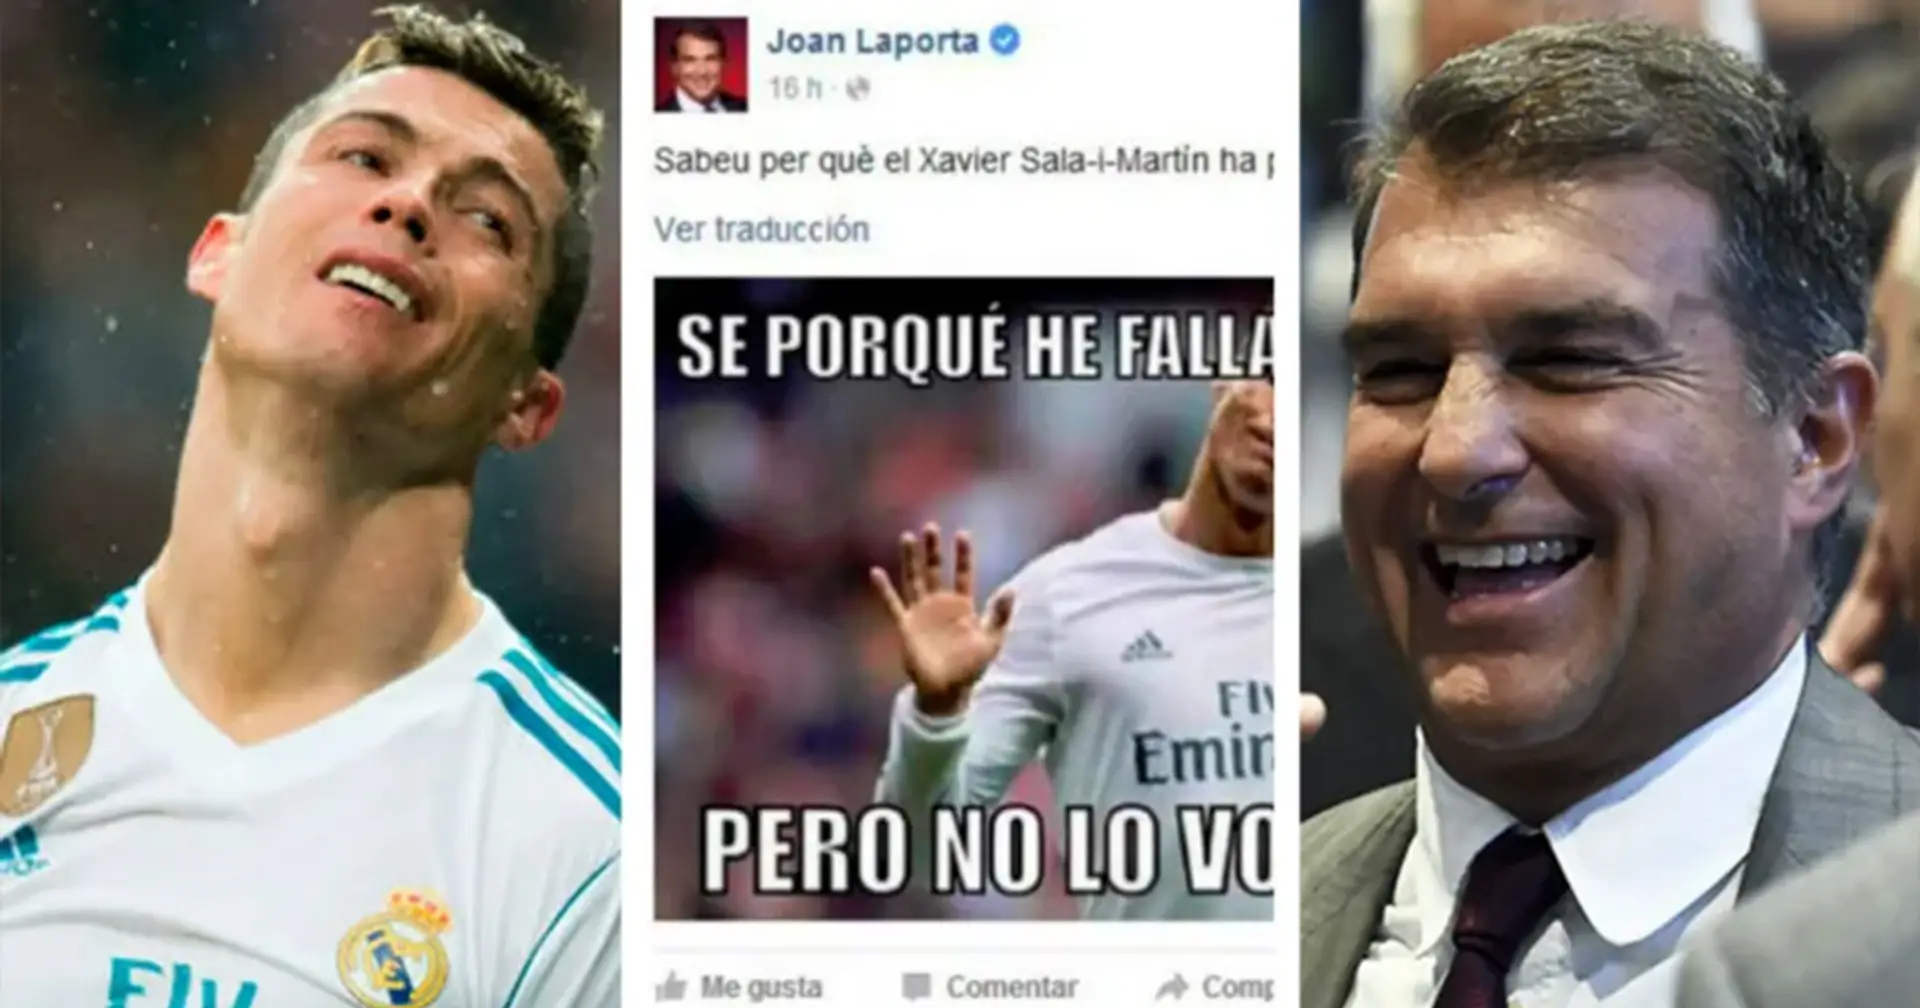 La vez que Joan Laporta se burló de Cristiano Ronaldo con un meme en Facebook: el Real Madrid perdió puntos en ese juego